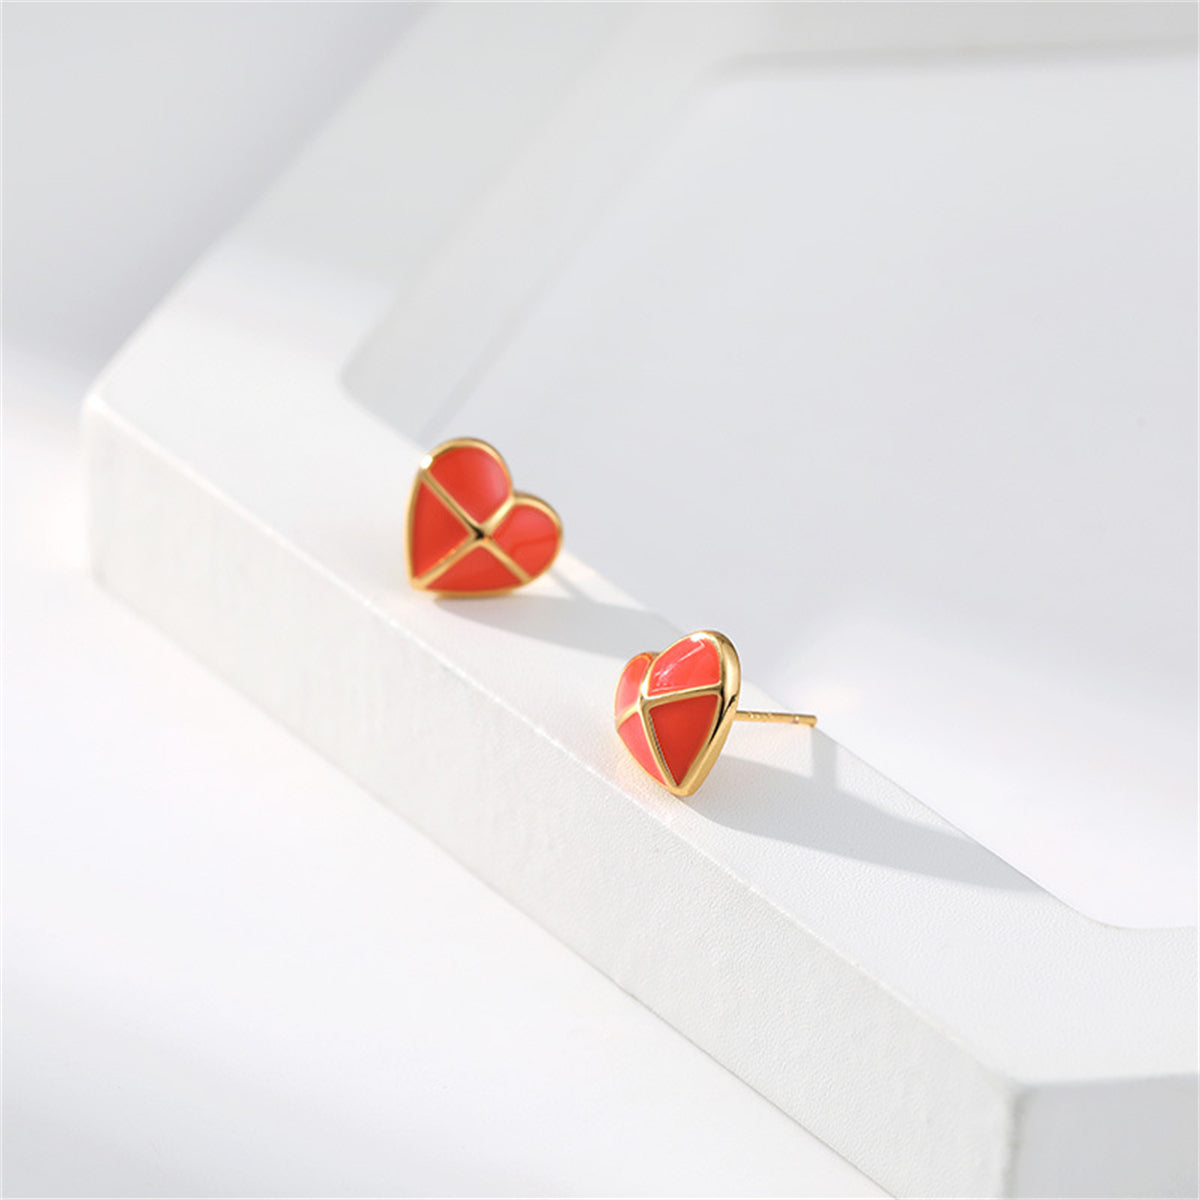 Red Enamel & 18K Gold-Plated Cross Heart Stud Earrings